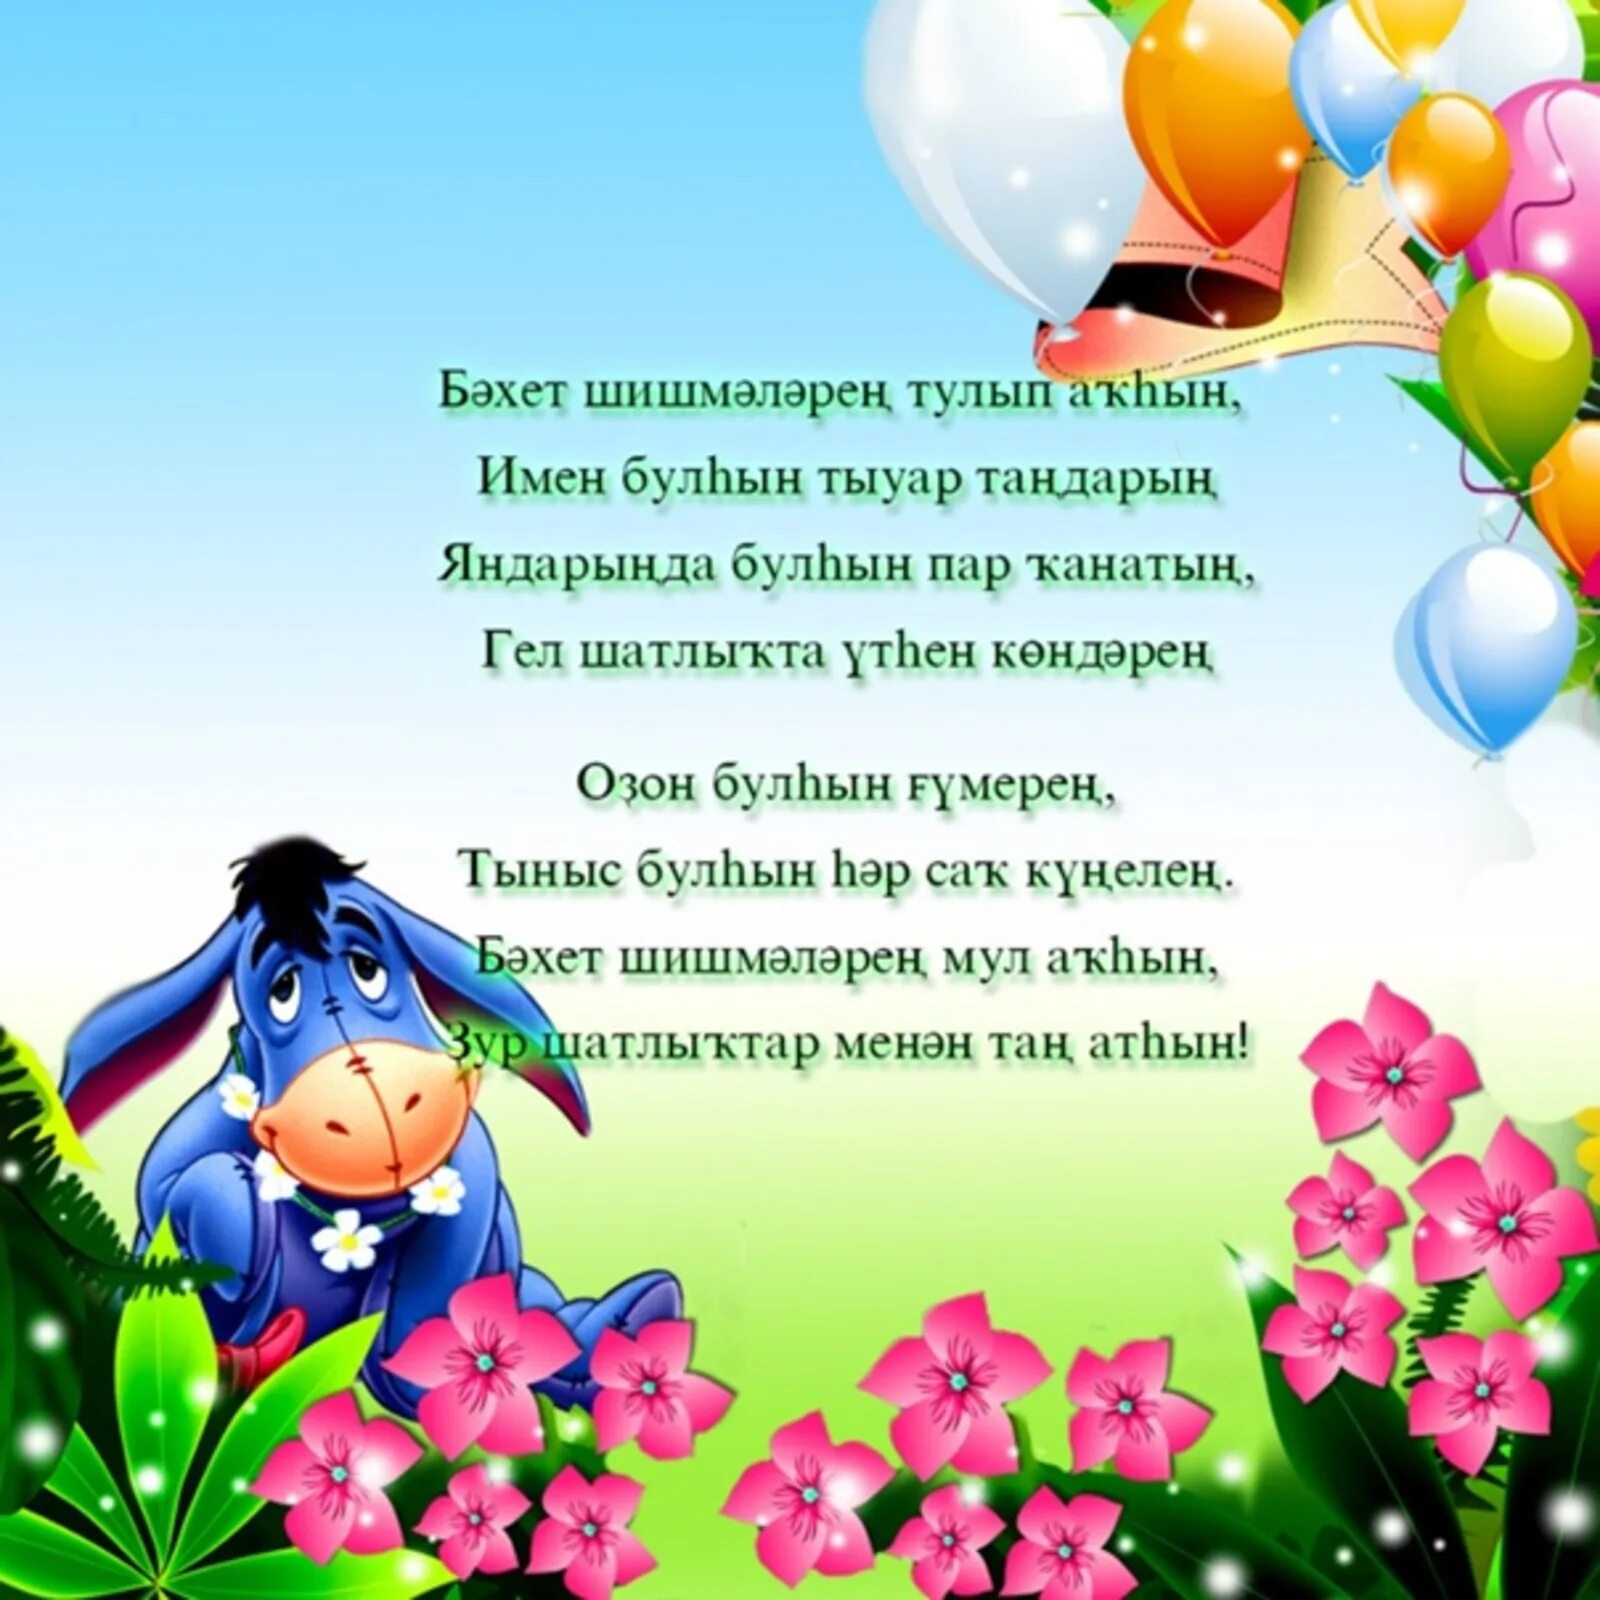 Поздравления с днём рождения на башкирском языке. Поздравления с днём рождения женщине на башкирском языке. Открытки с днём рождения на башкирском. Открытки на башкирском языке. Башкирские пожелания на день рождения